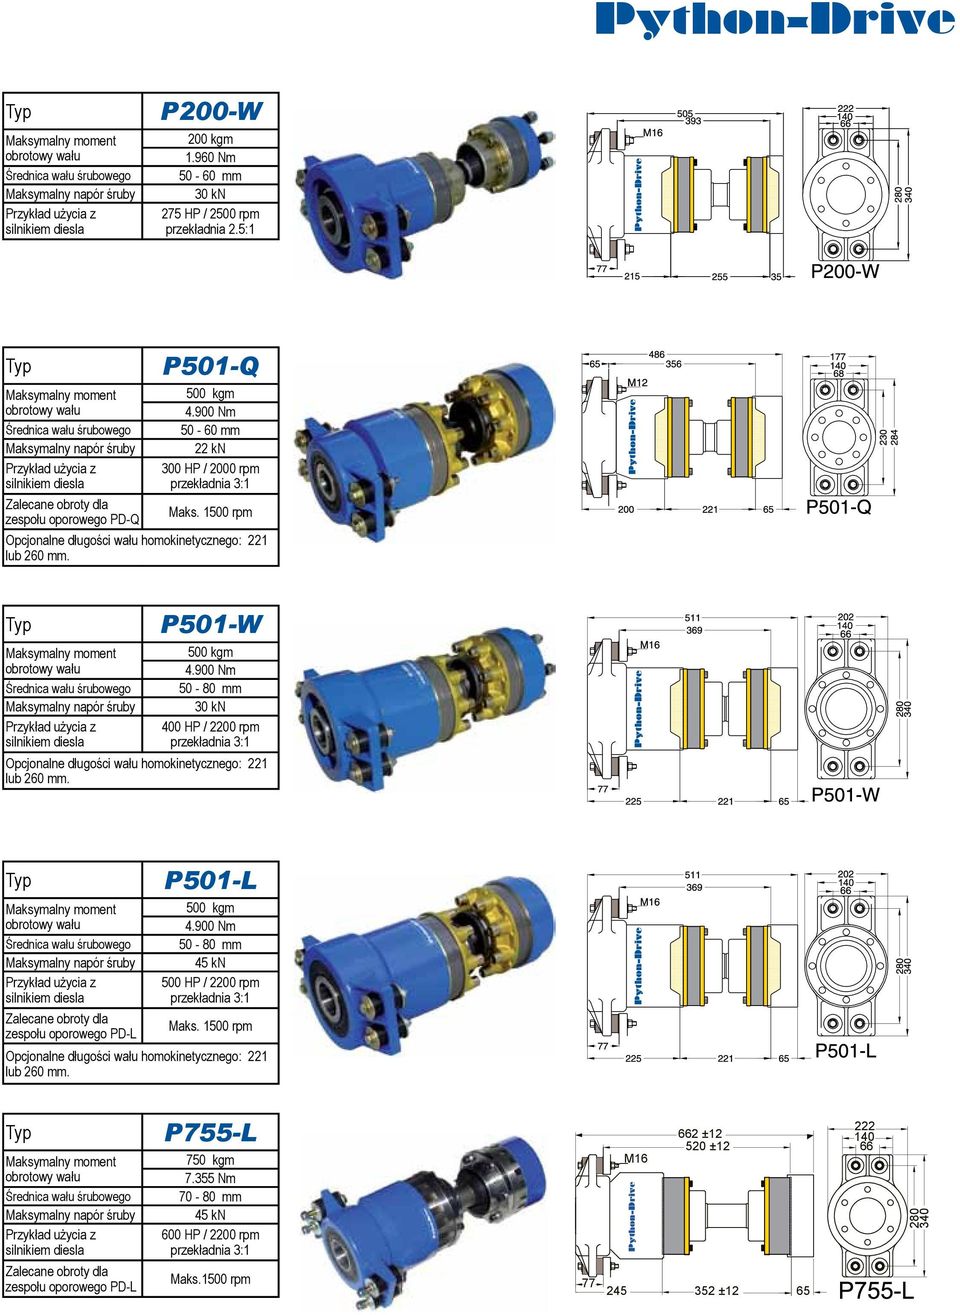 900 Nm 50-80 mm 30 kn 400 HP / 2200 rpm Opcjonalne długości wału homokinetycznego: 221 lub 260 mm. zespołu oporowego PD-L P501-L 500 kgm 4.